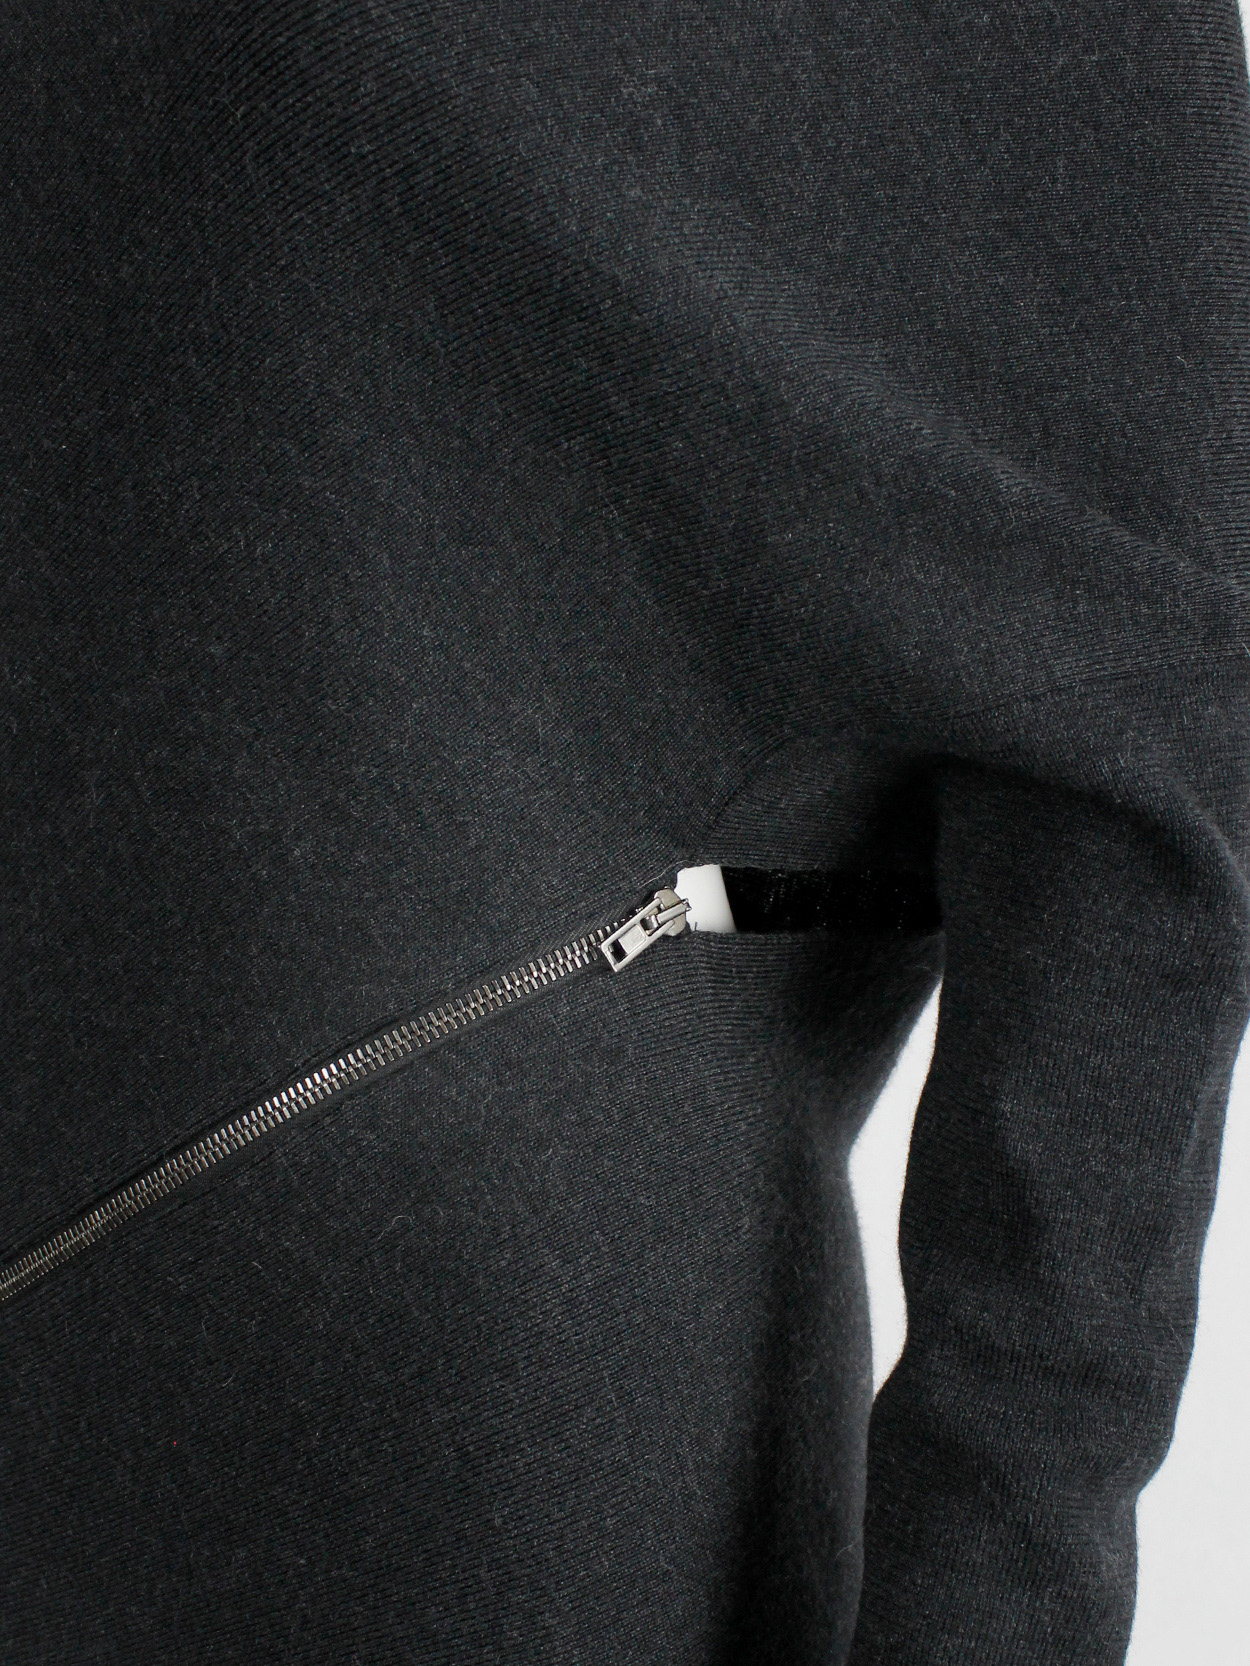 Maison Martin Margiela 1 dark grey jumper with spiral zippers fall 2012 (9)